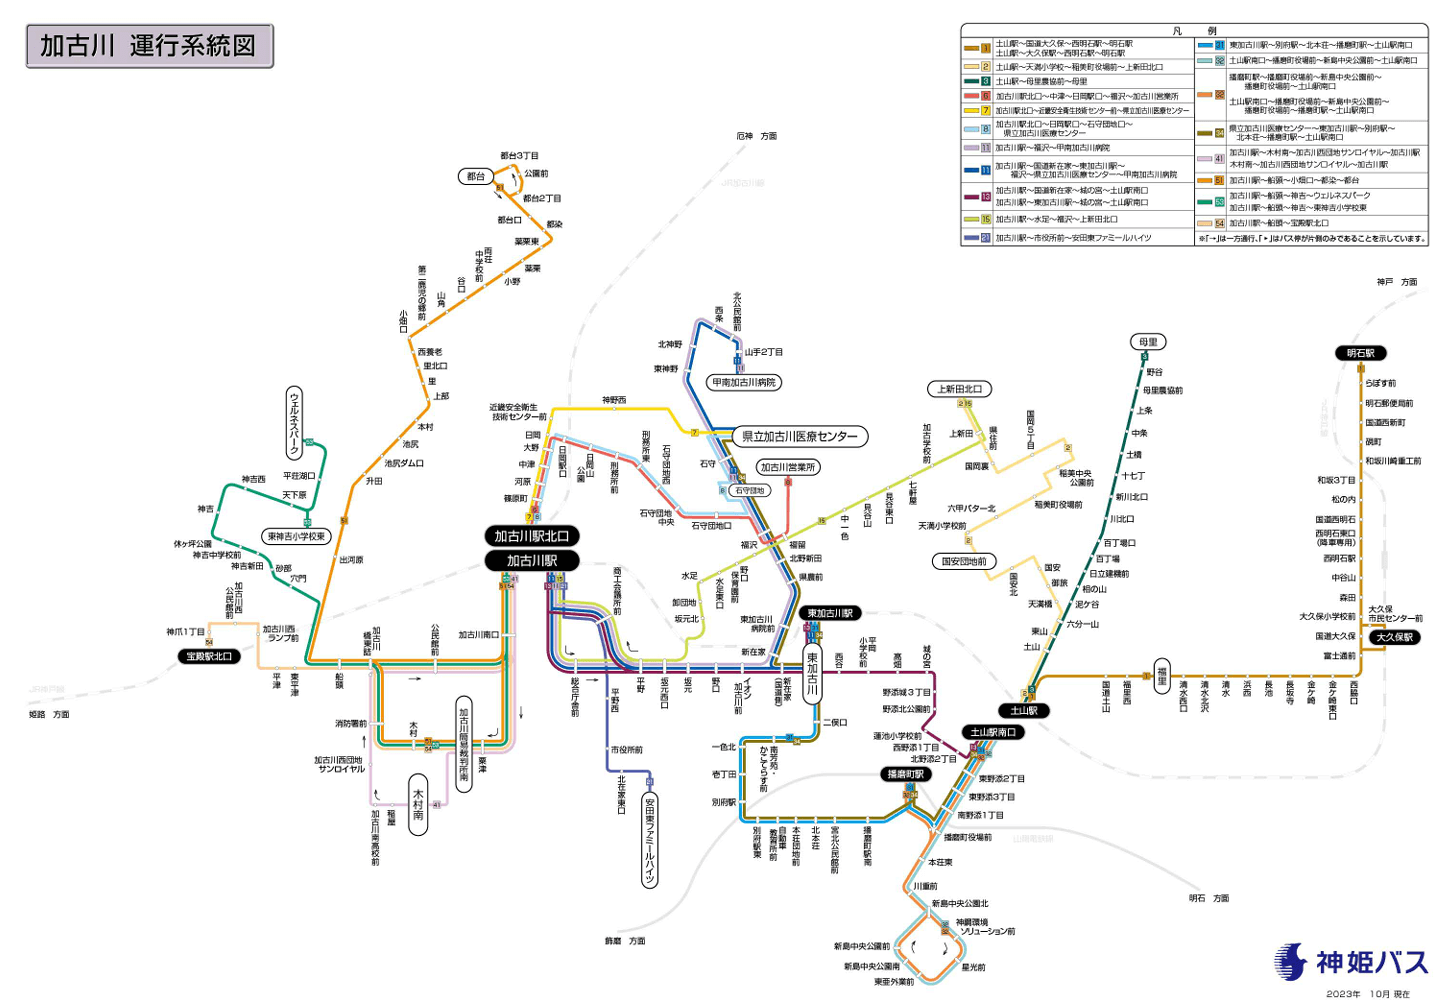 神姫バス加古川運行系統図